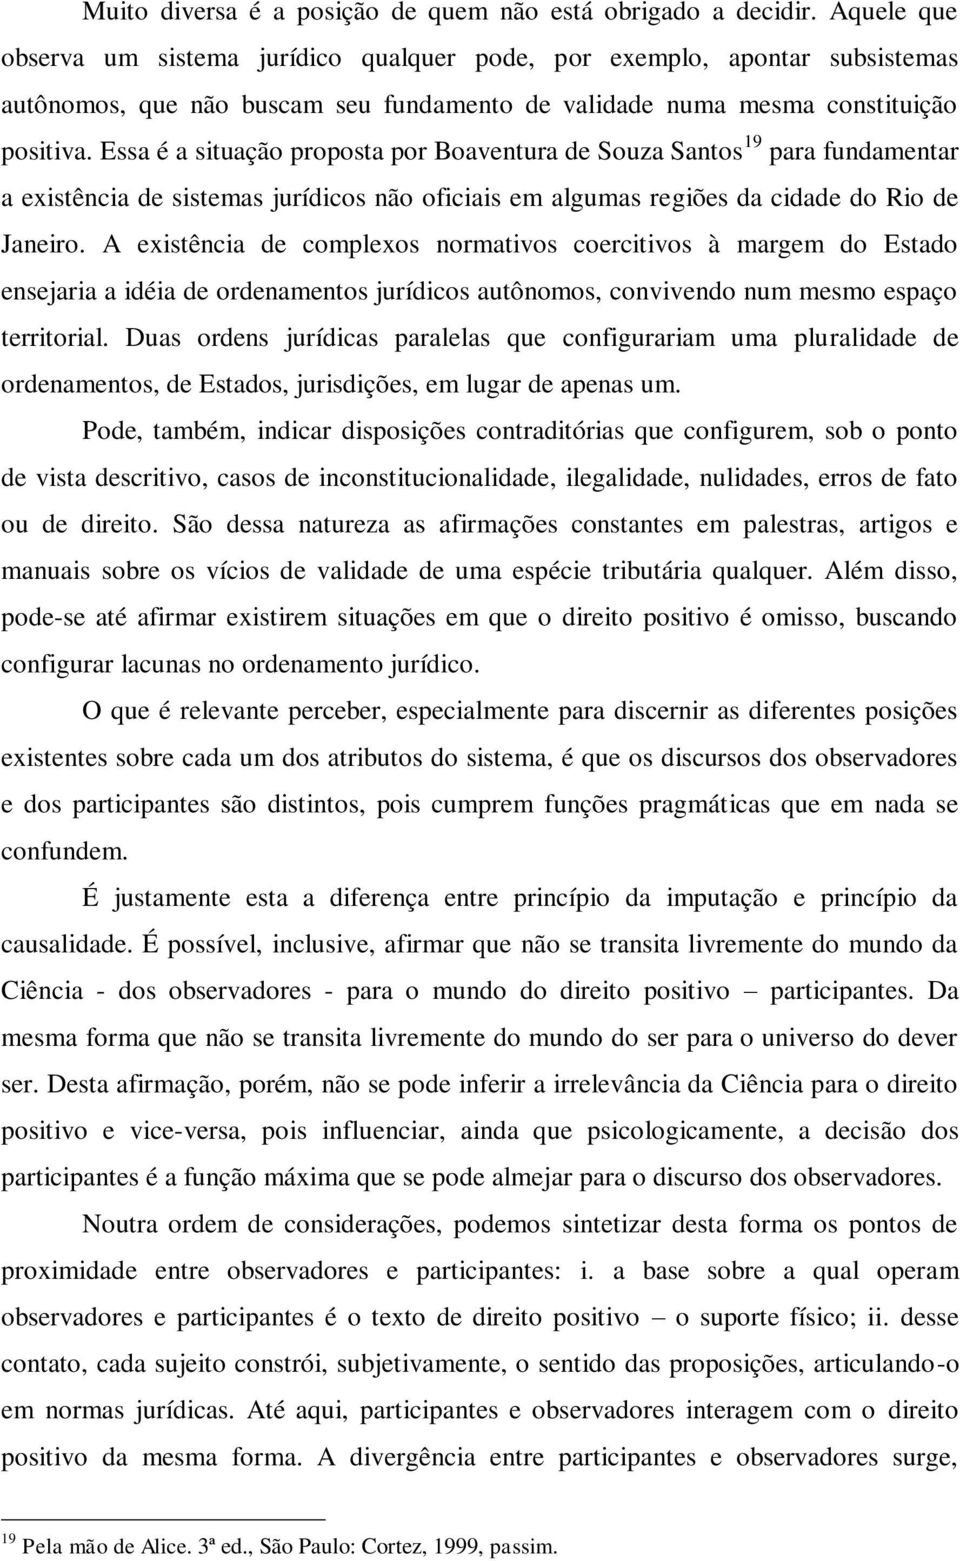 Essa é a situação proposta por Boaventura de Souza Santos 19 para fundamentar a existência de sistemas jurídicos não oficiais em algumas regiões da cidade do Rio de Janeiro.